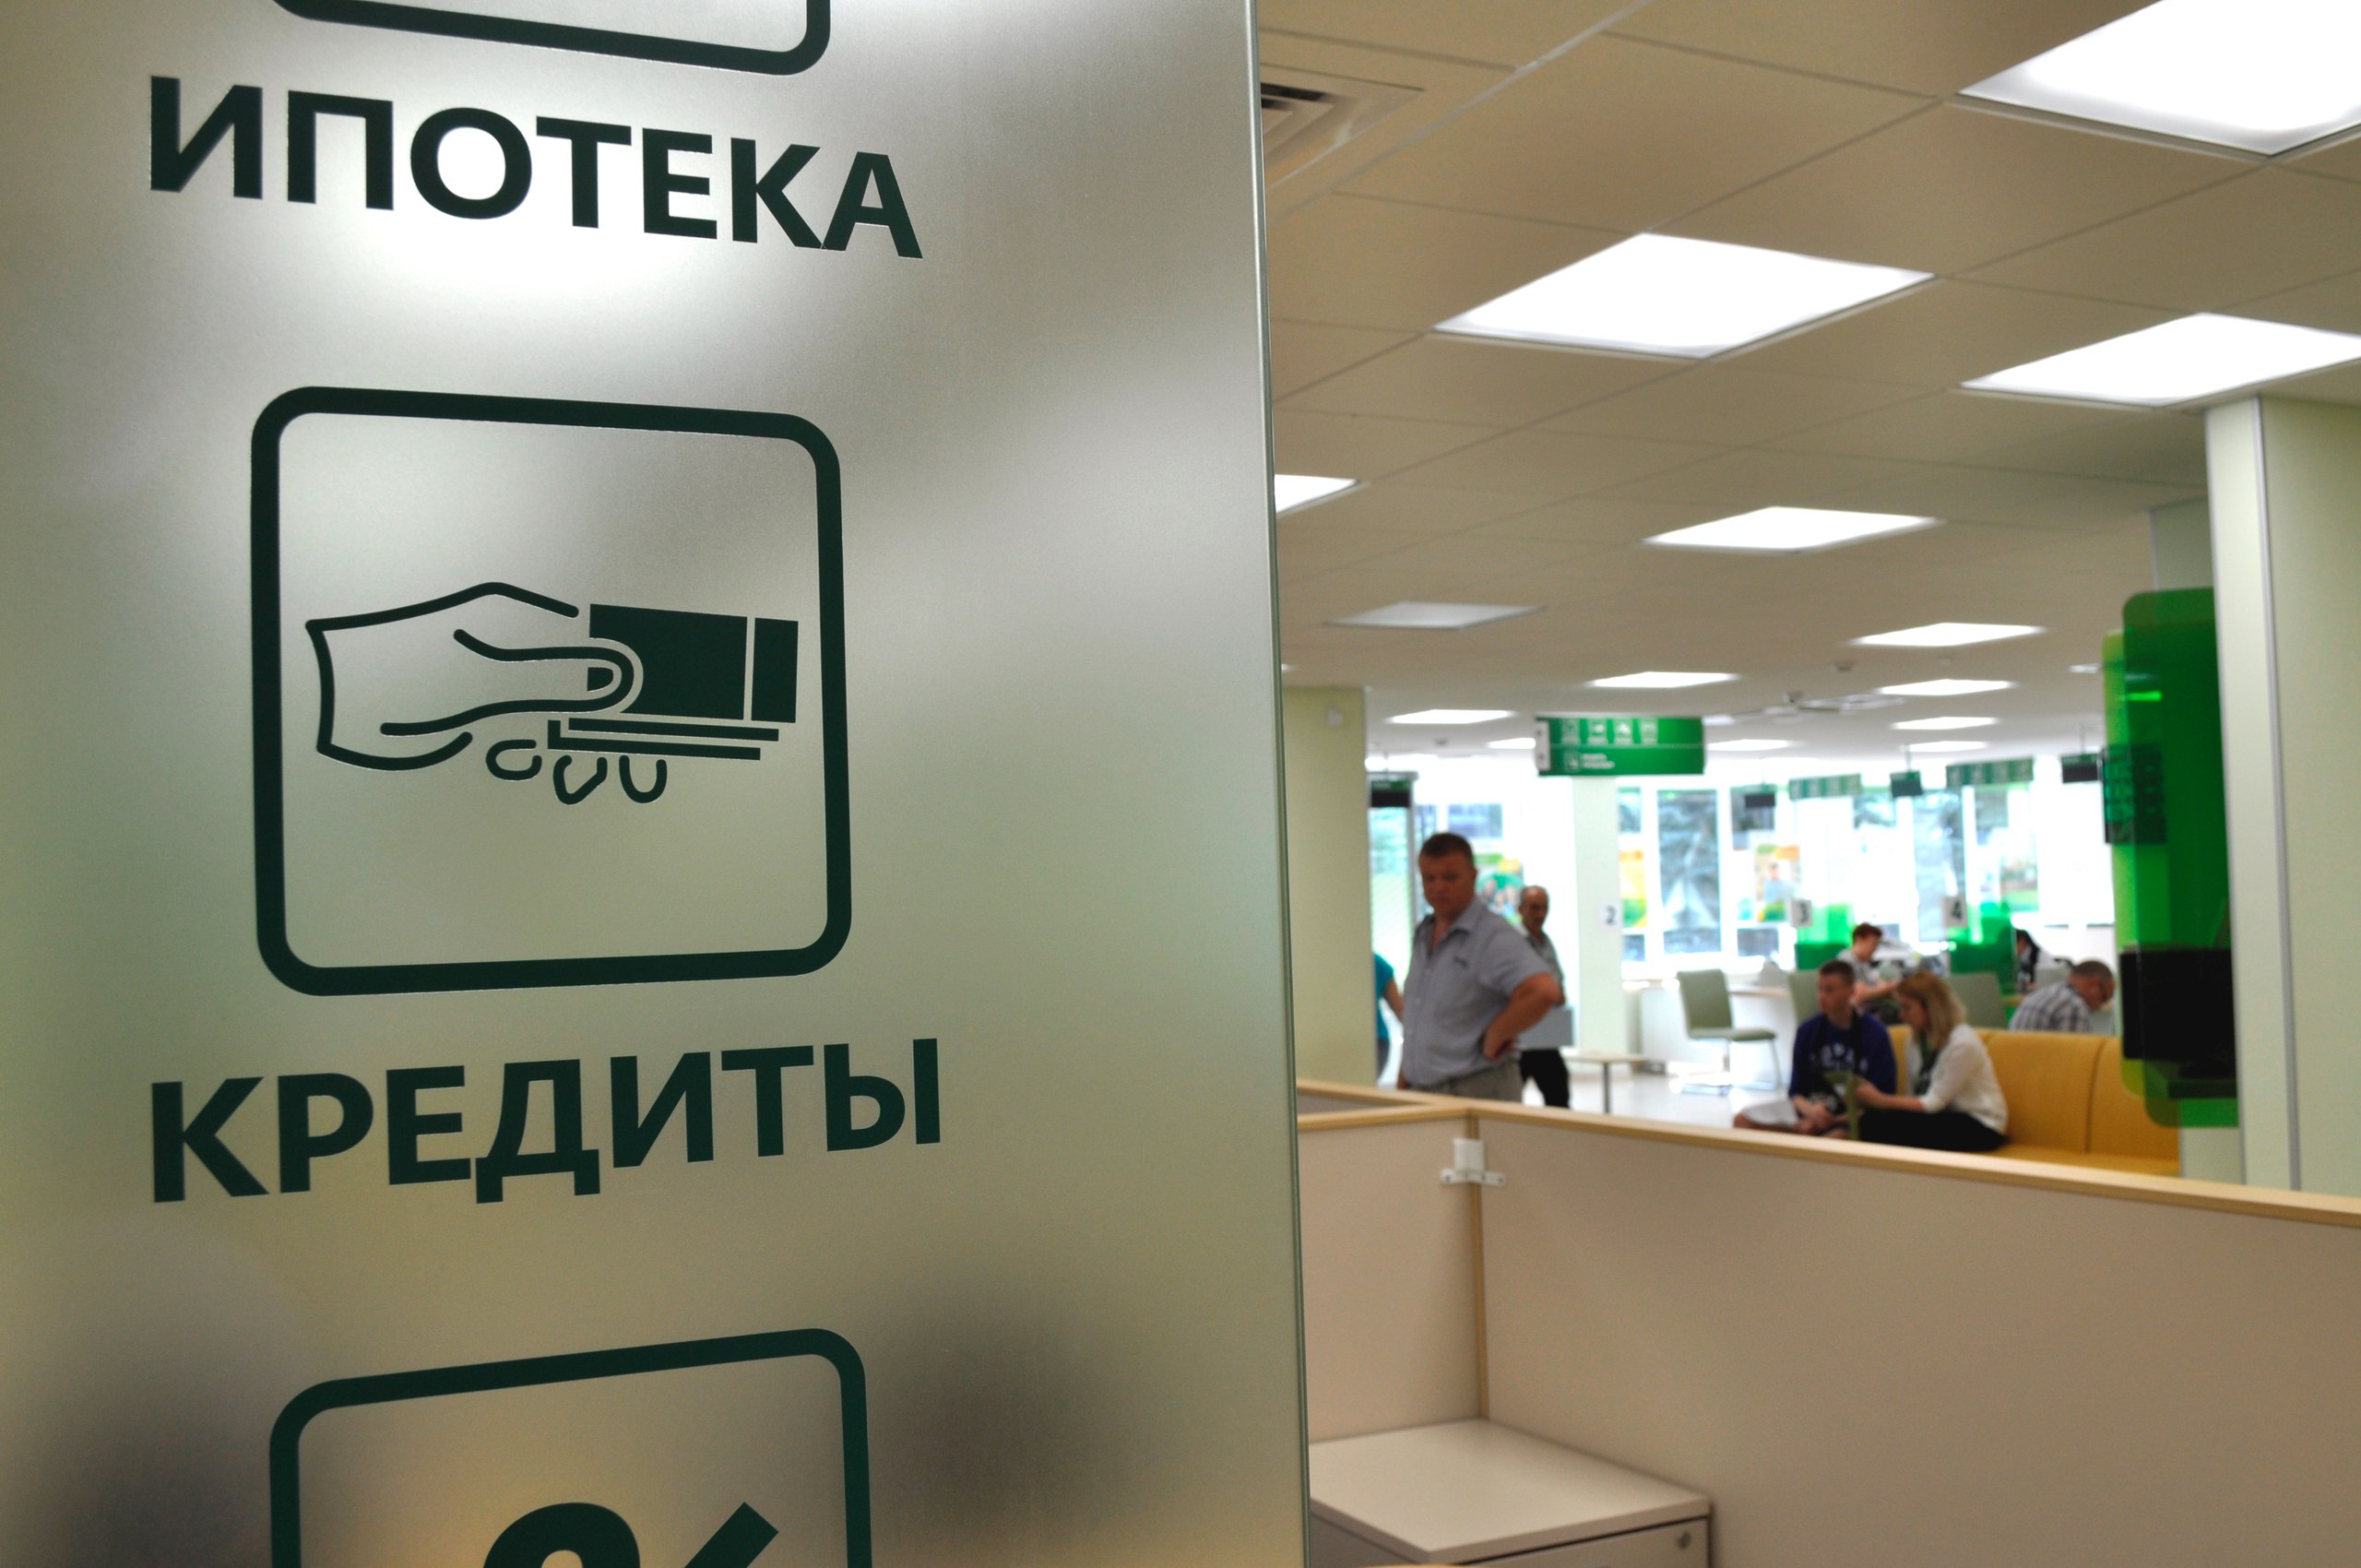 Выдачи ипотеки в России достигли 5,4 трлн рублей